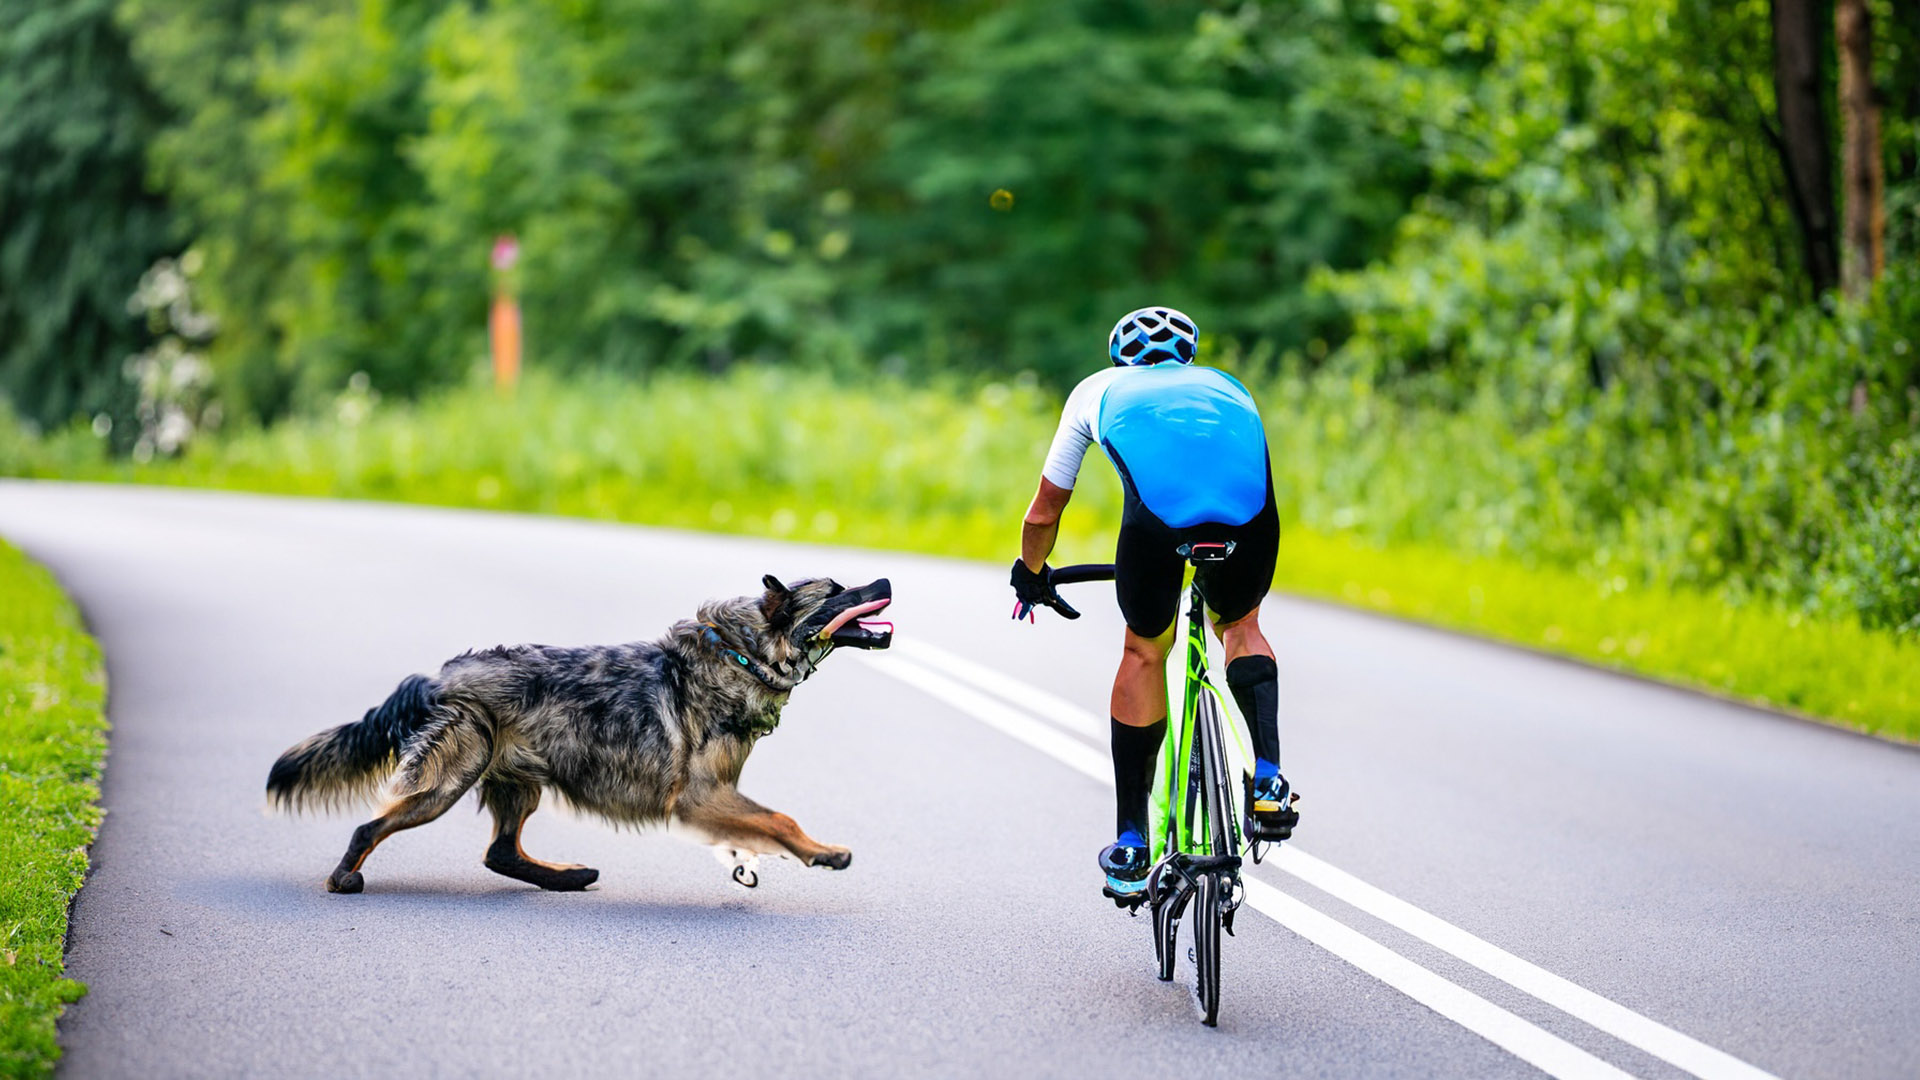 Un juzgado contencioso confirma la multa de 5.001 euros impuesta al dueño de un perro por morder a un ciclista